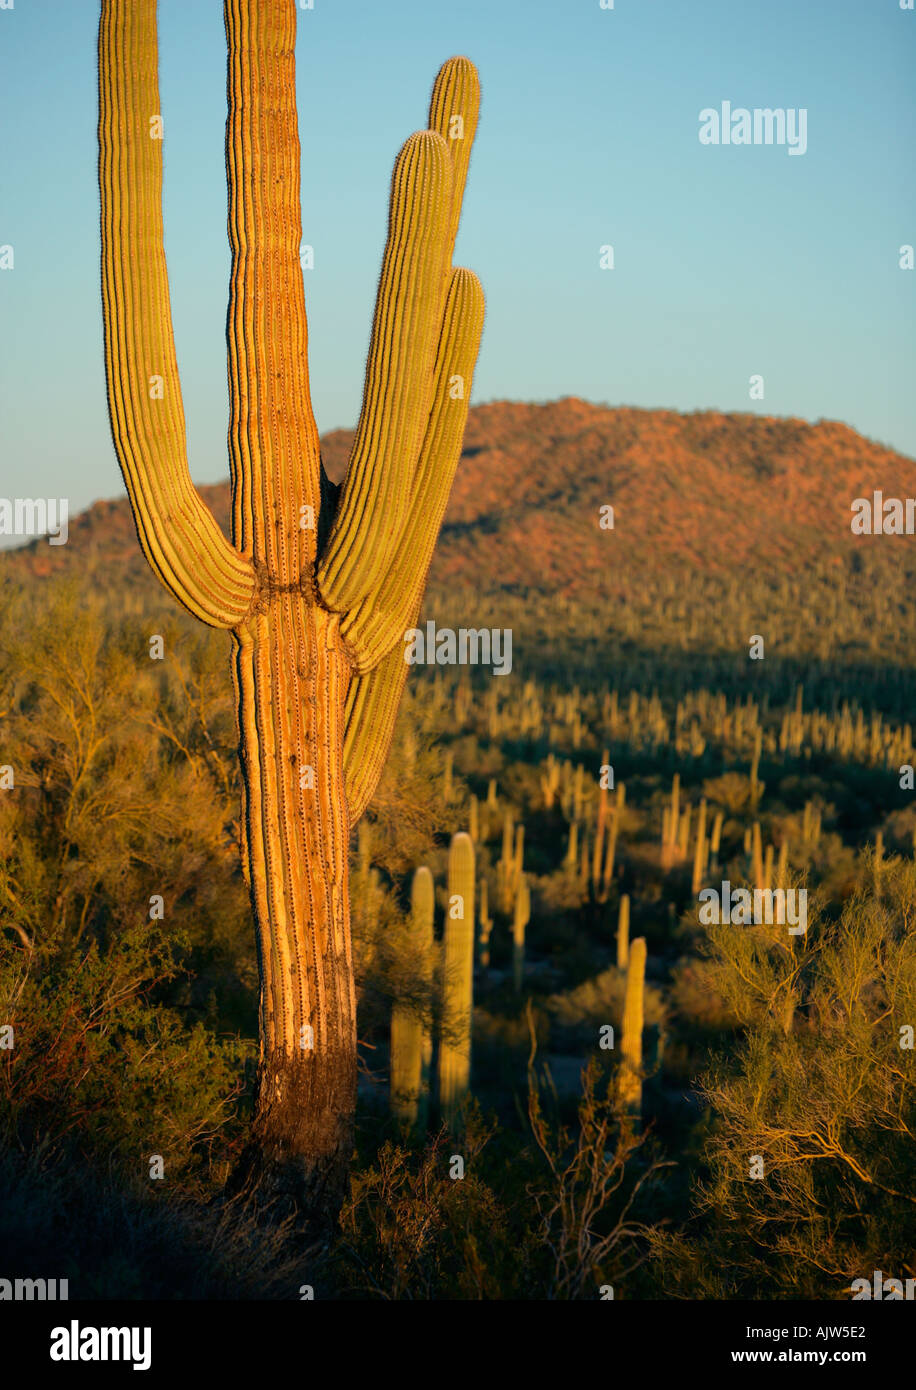 Eine große Saguaro-Kaktus im Vordergrund einer typischen südlichen Arizona Wüste Landschaft Stockfoto